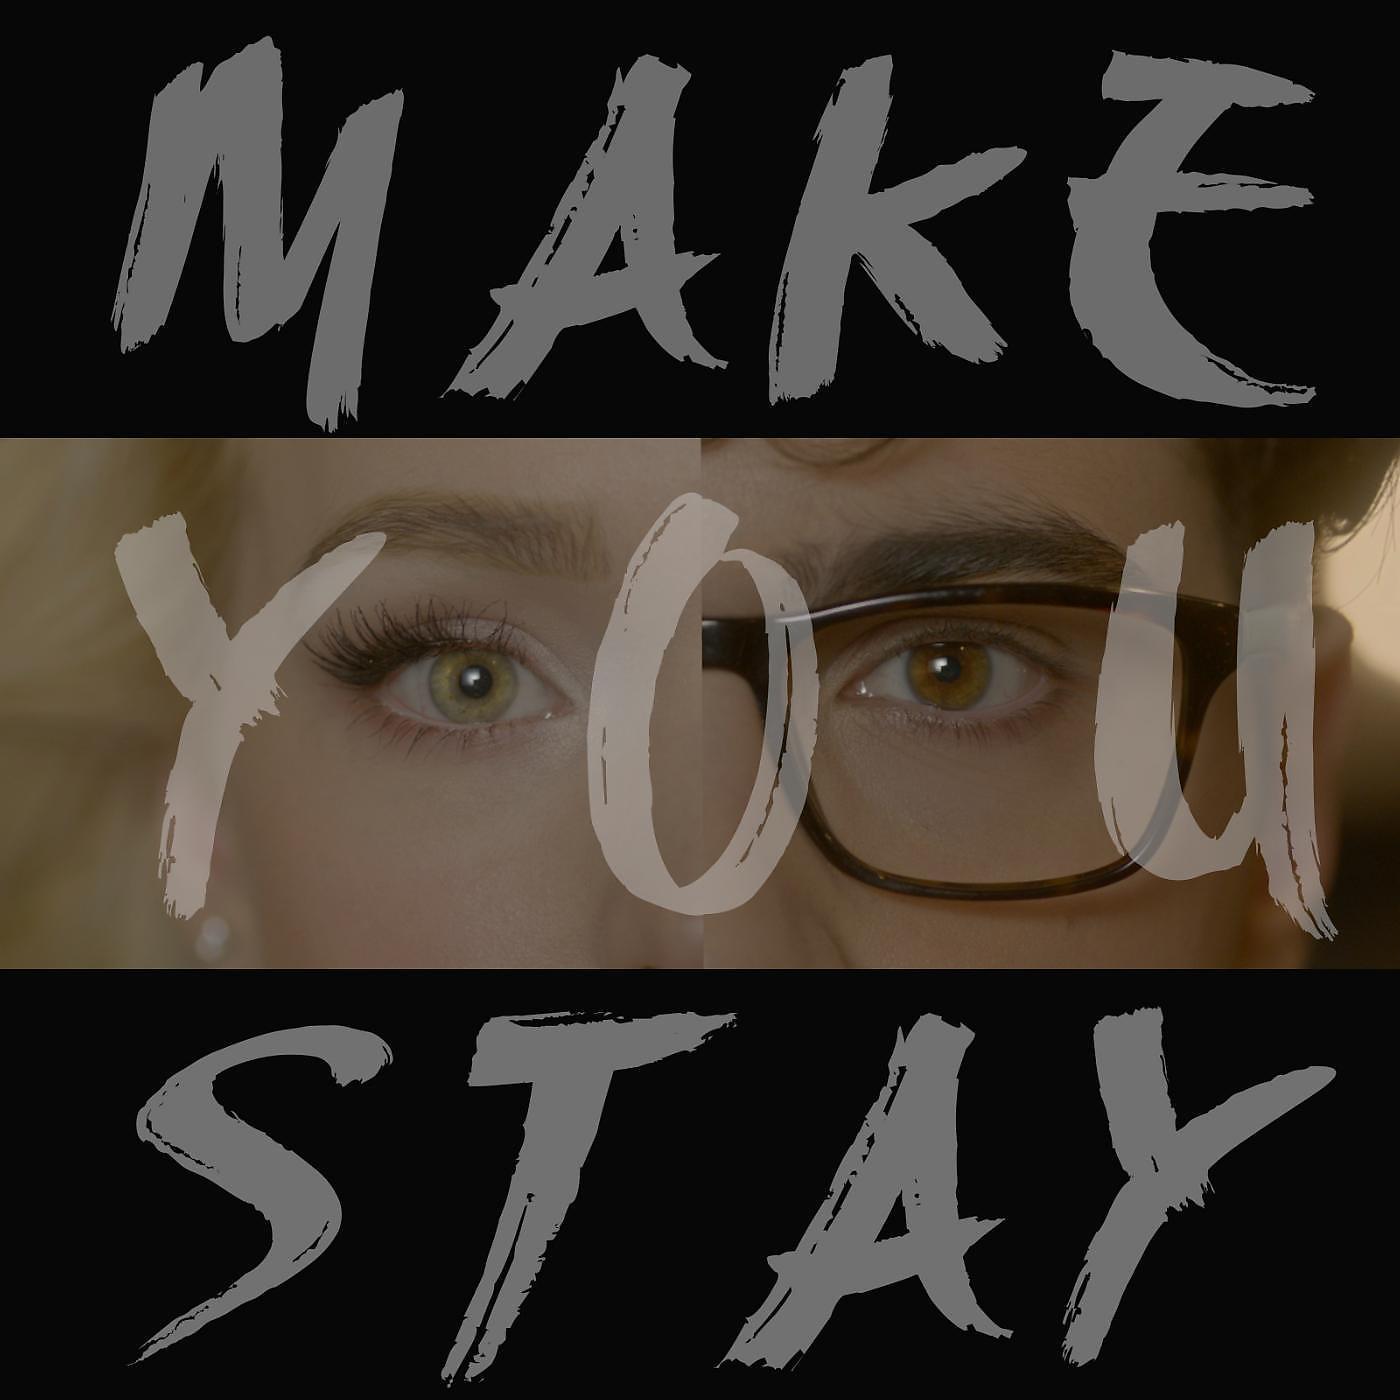 Постер альбома Make You Stay